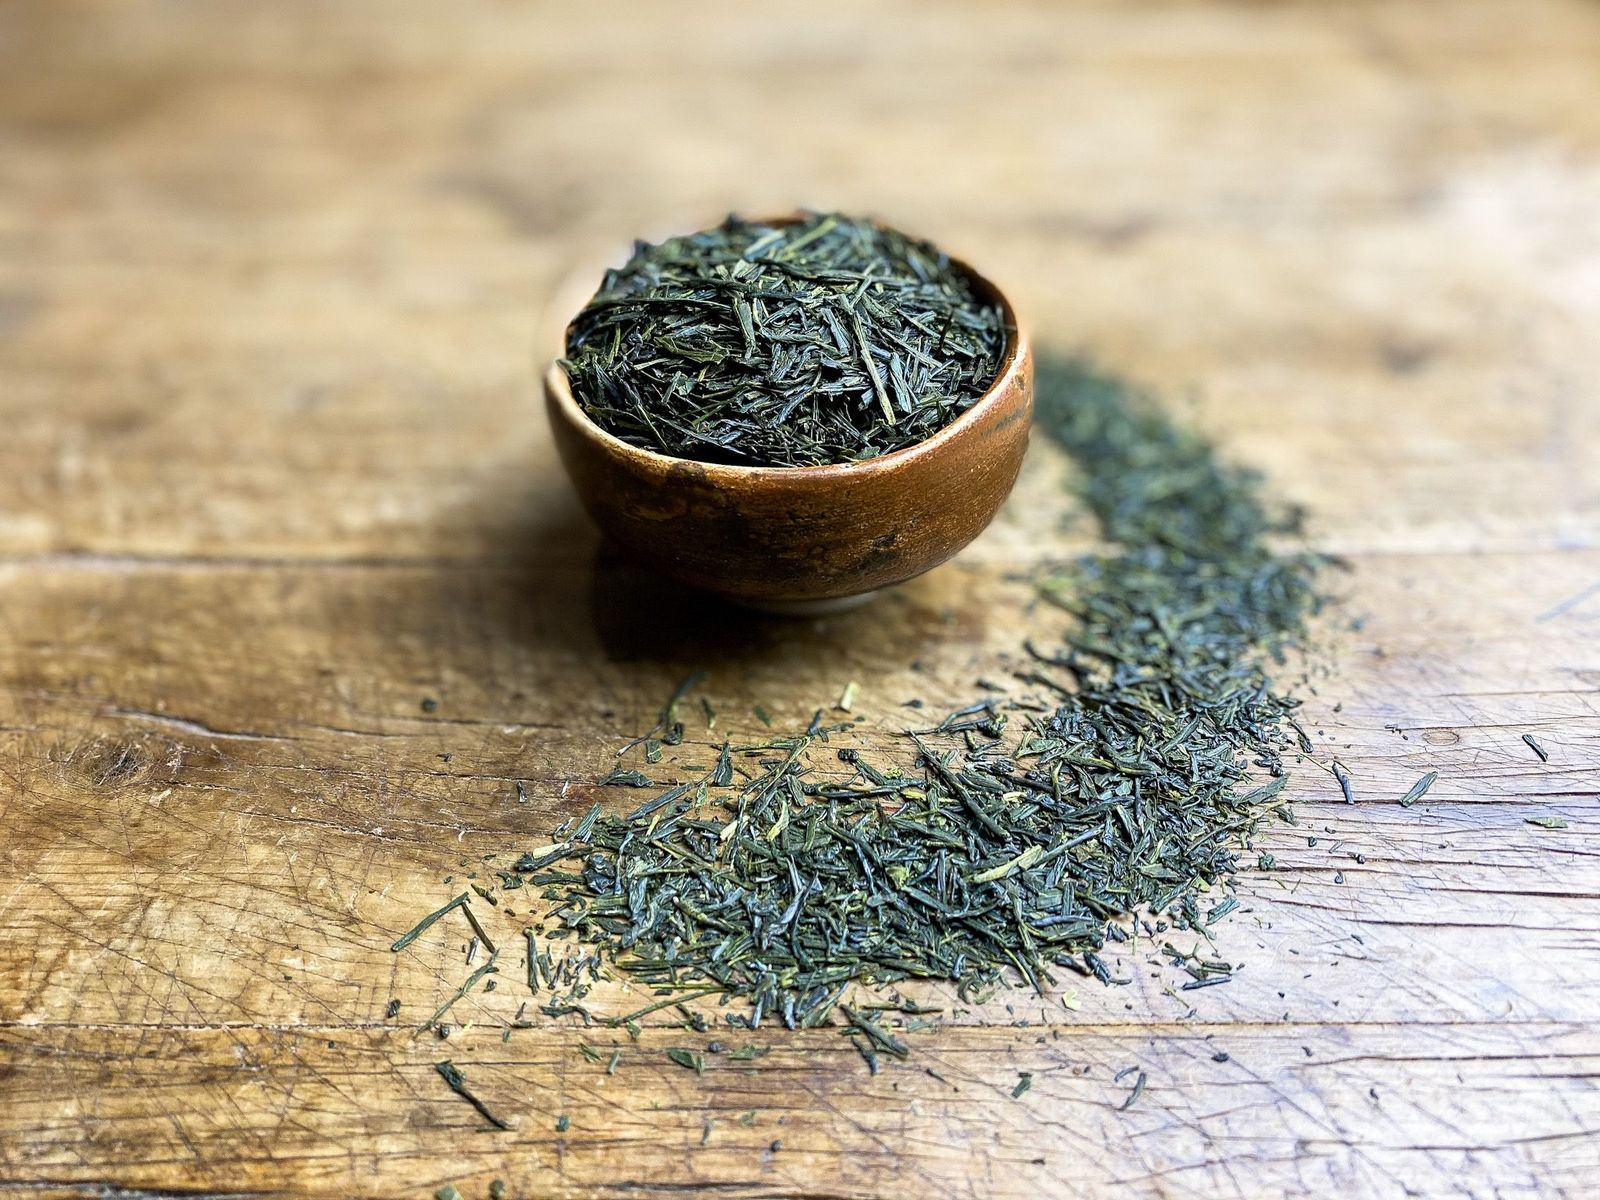 Tout savoir sur le thé Matcha : Origines et bienfaits